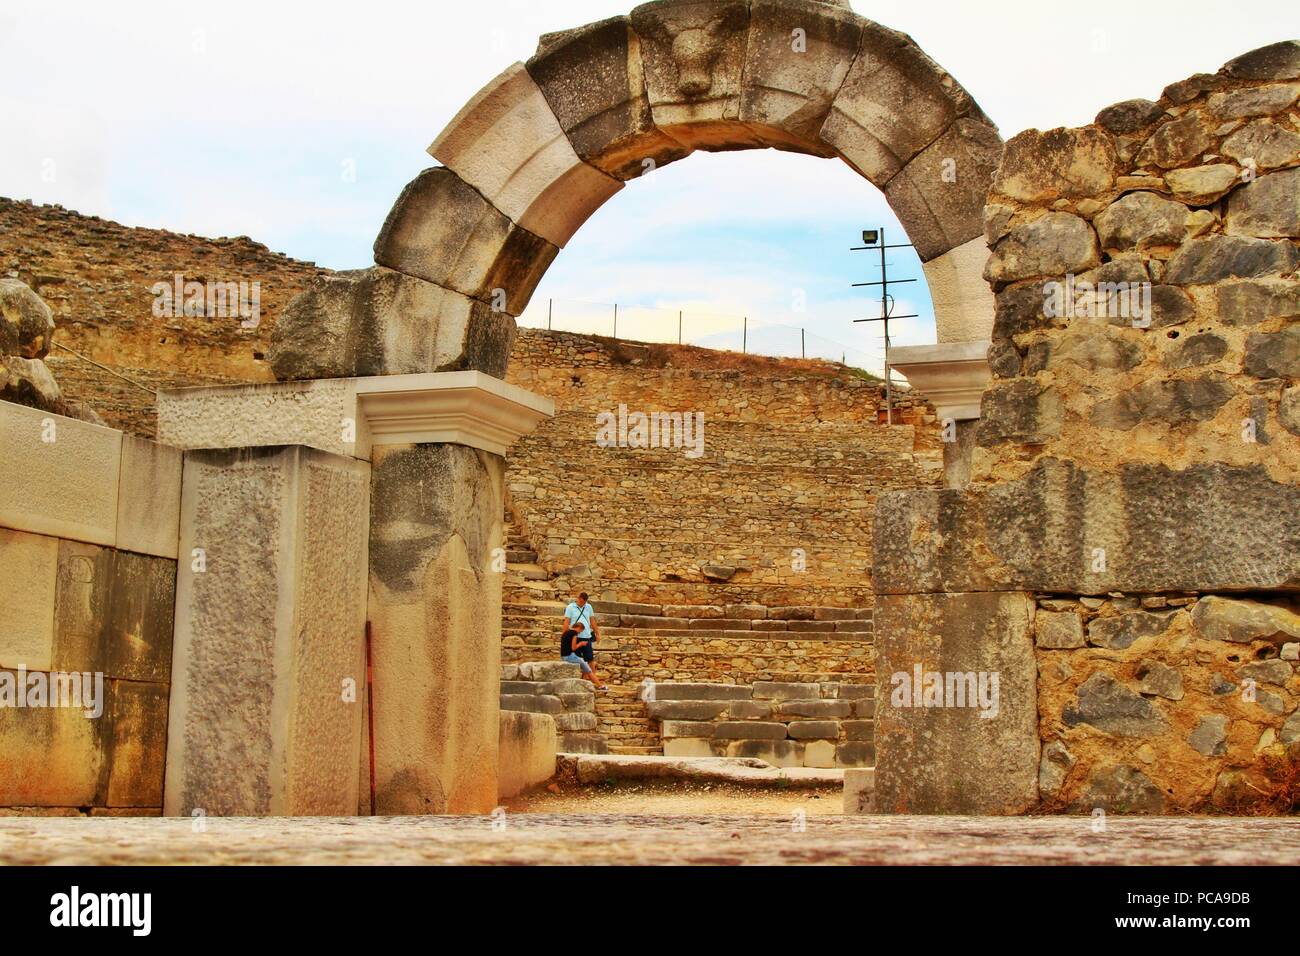 Archi, colonne ed elementi architettonici sul sito archeologico dell'antica città greca di Filippi Foto Stock